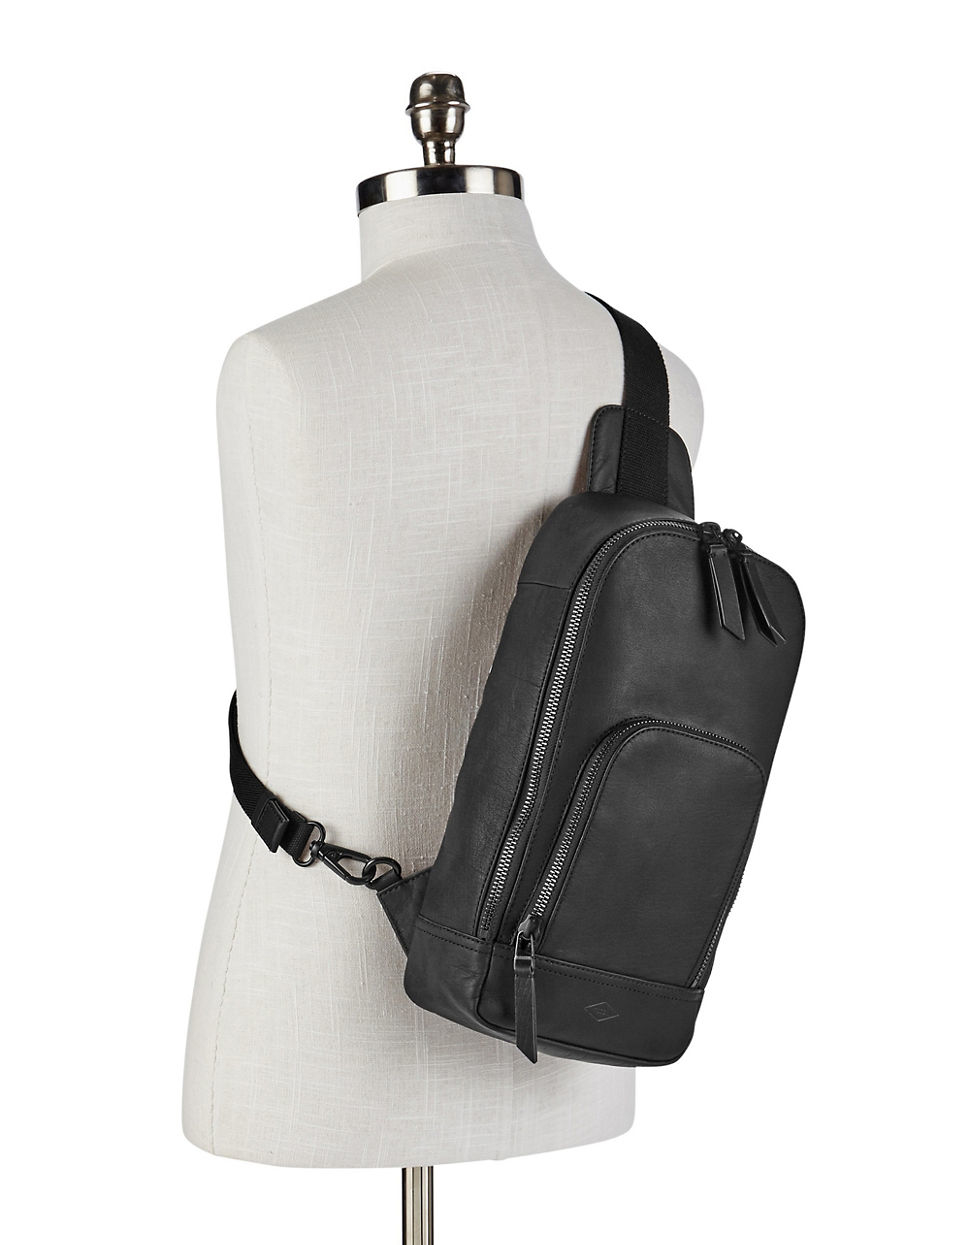 Fossil Leather Miller Slingpack Backpack in Black for Men - Lyst